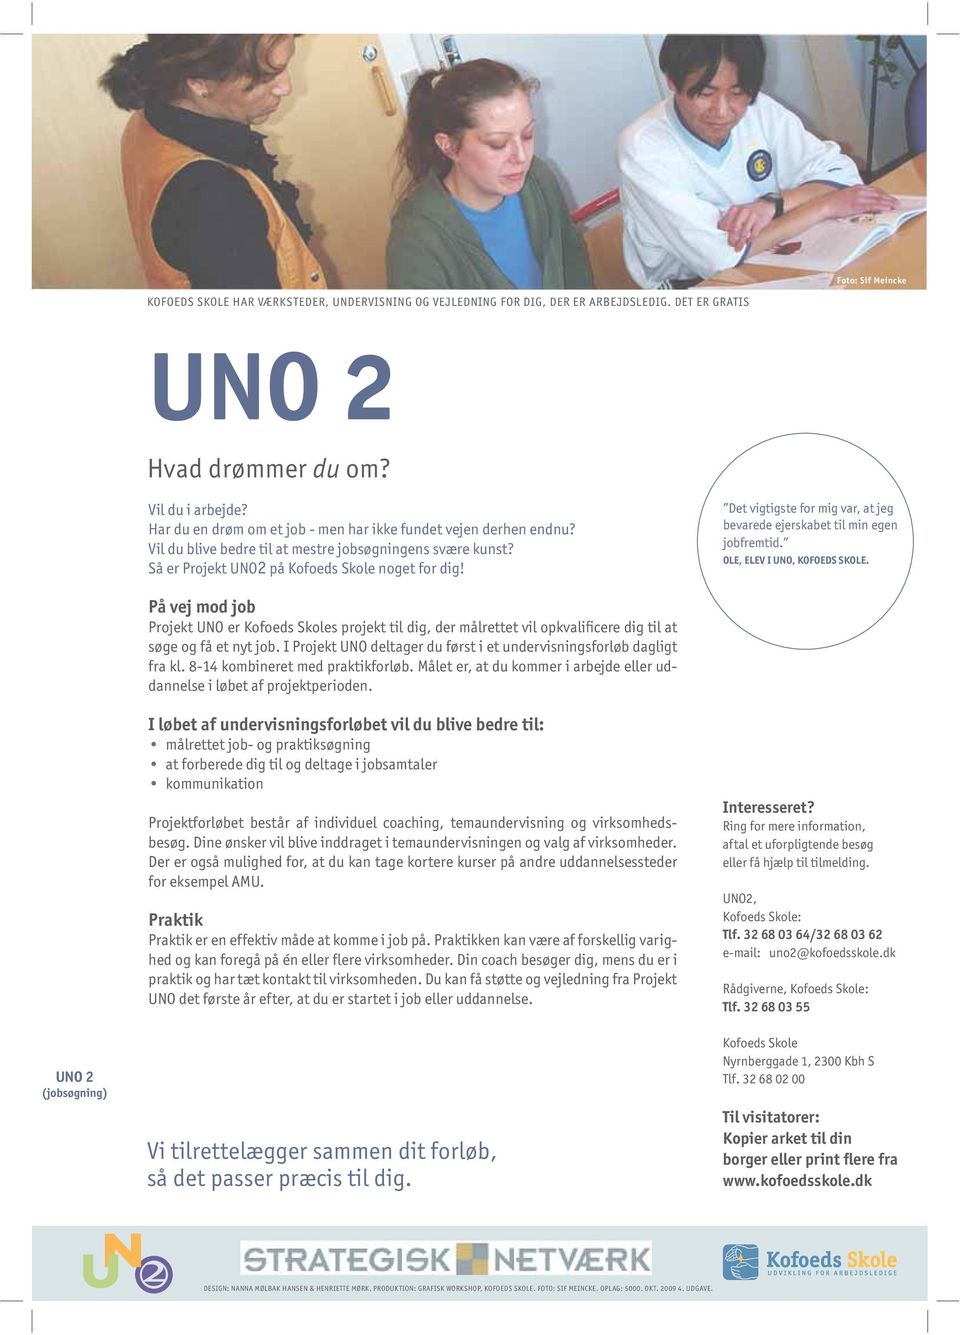 På vej mod job Projekt UNO er s projekt til dig, der målrettet vil opkvalificere dig til at søge og få et nyt job. I Projekt UNO deltager du først i et undervisningsforløb dagligt fra kl.